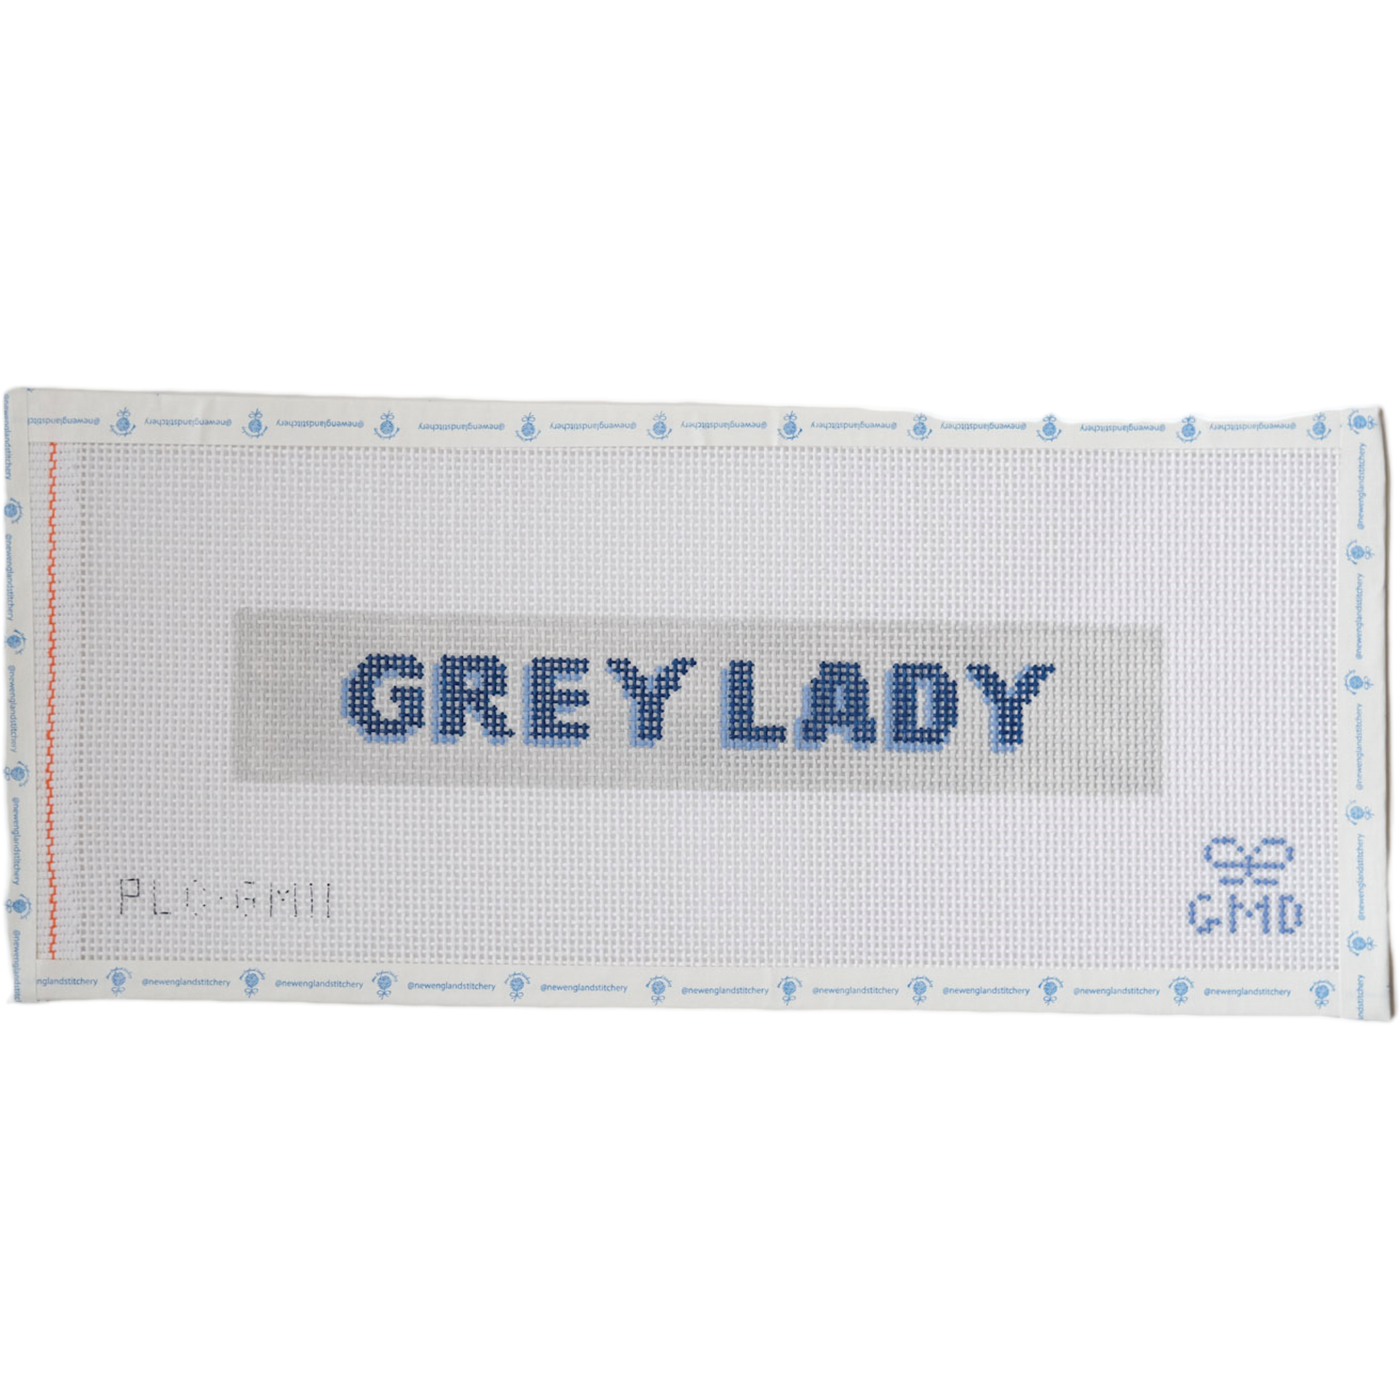 Grey Lady In Key Fob